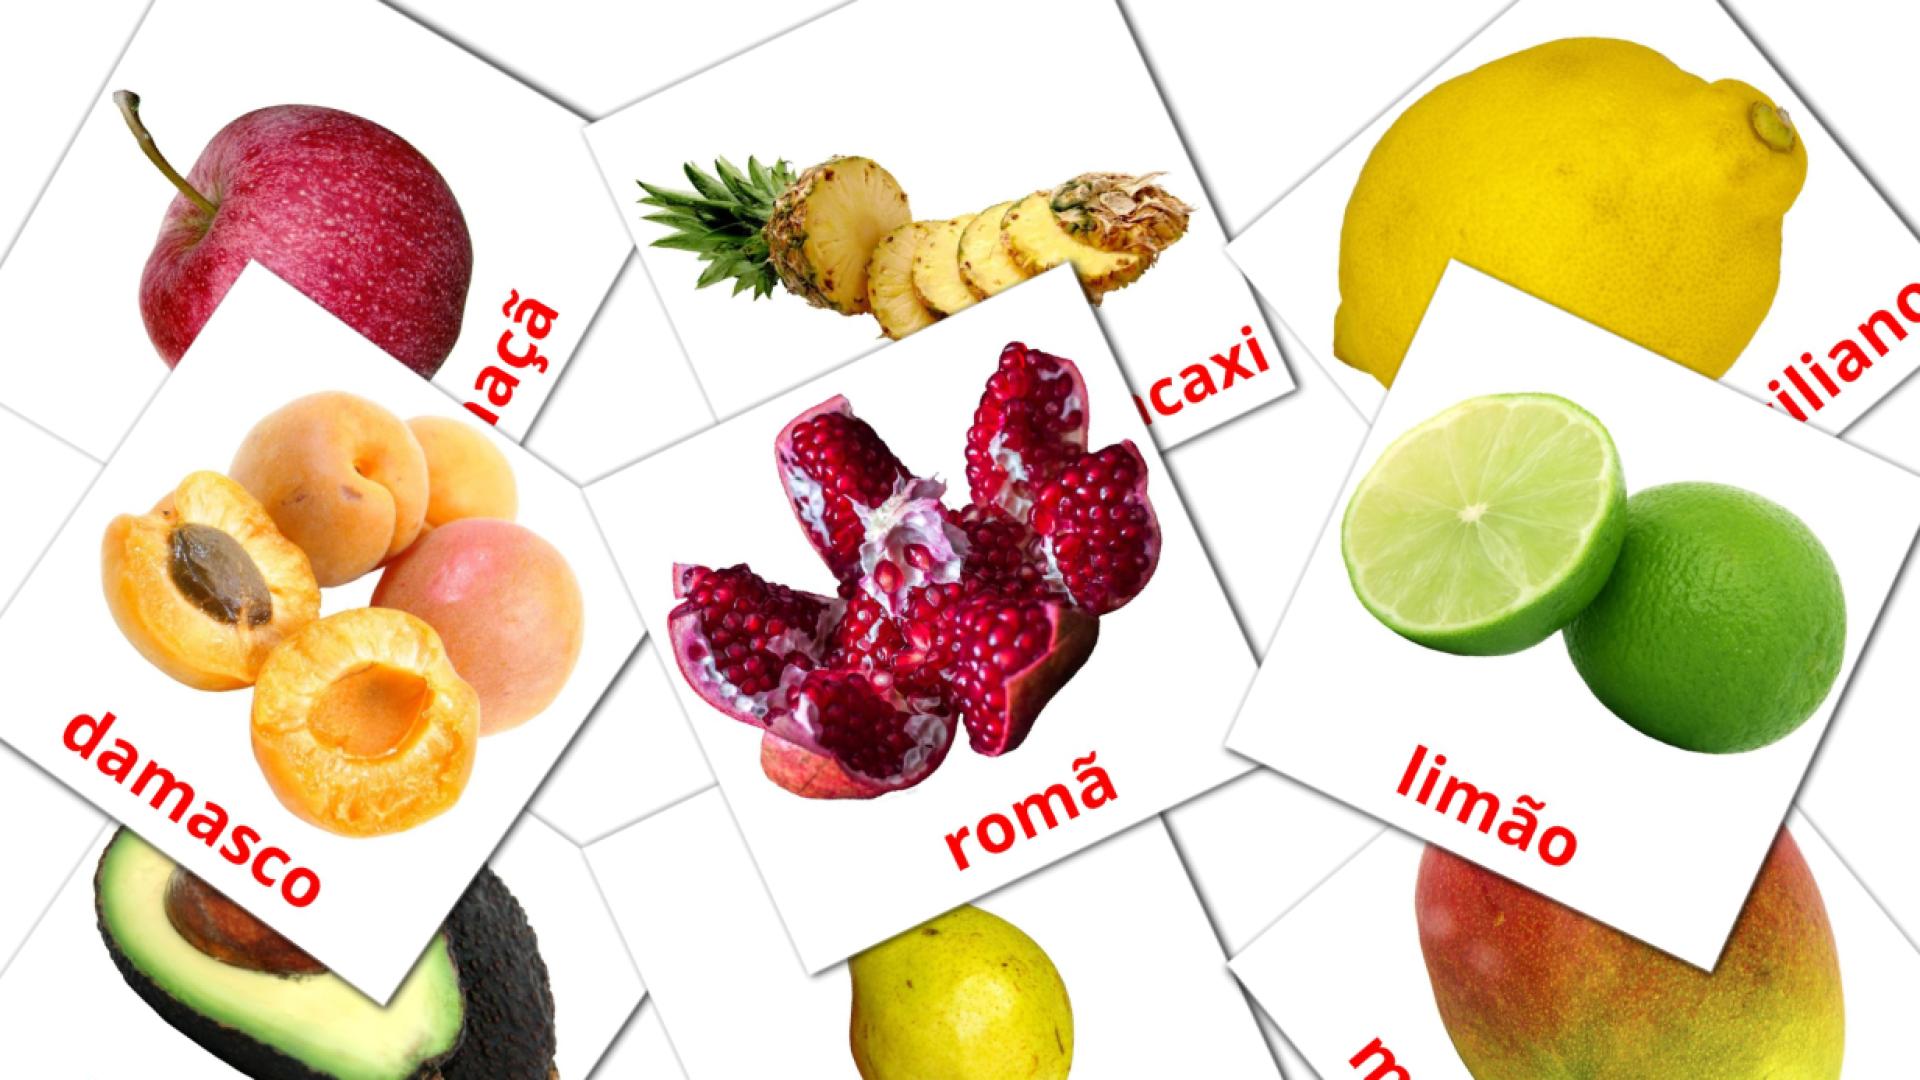 Imagiers Frutas